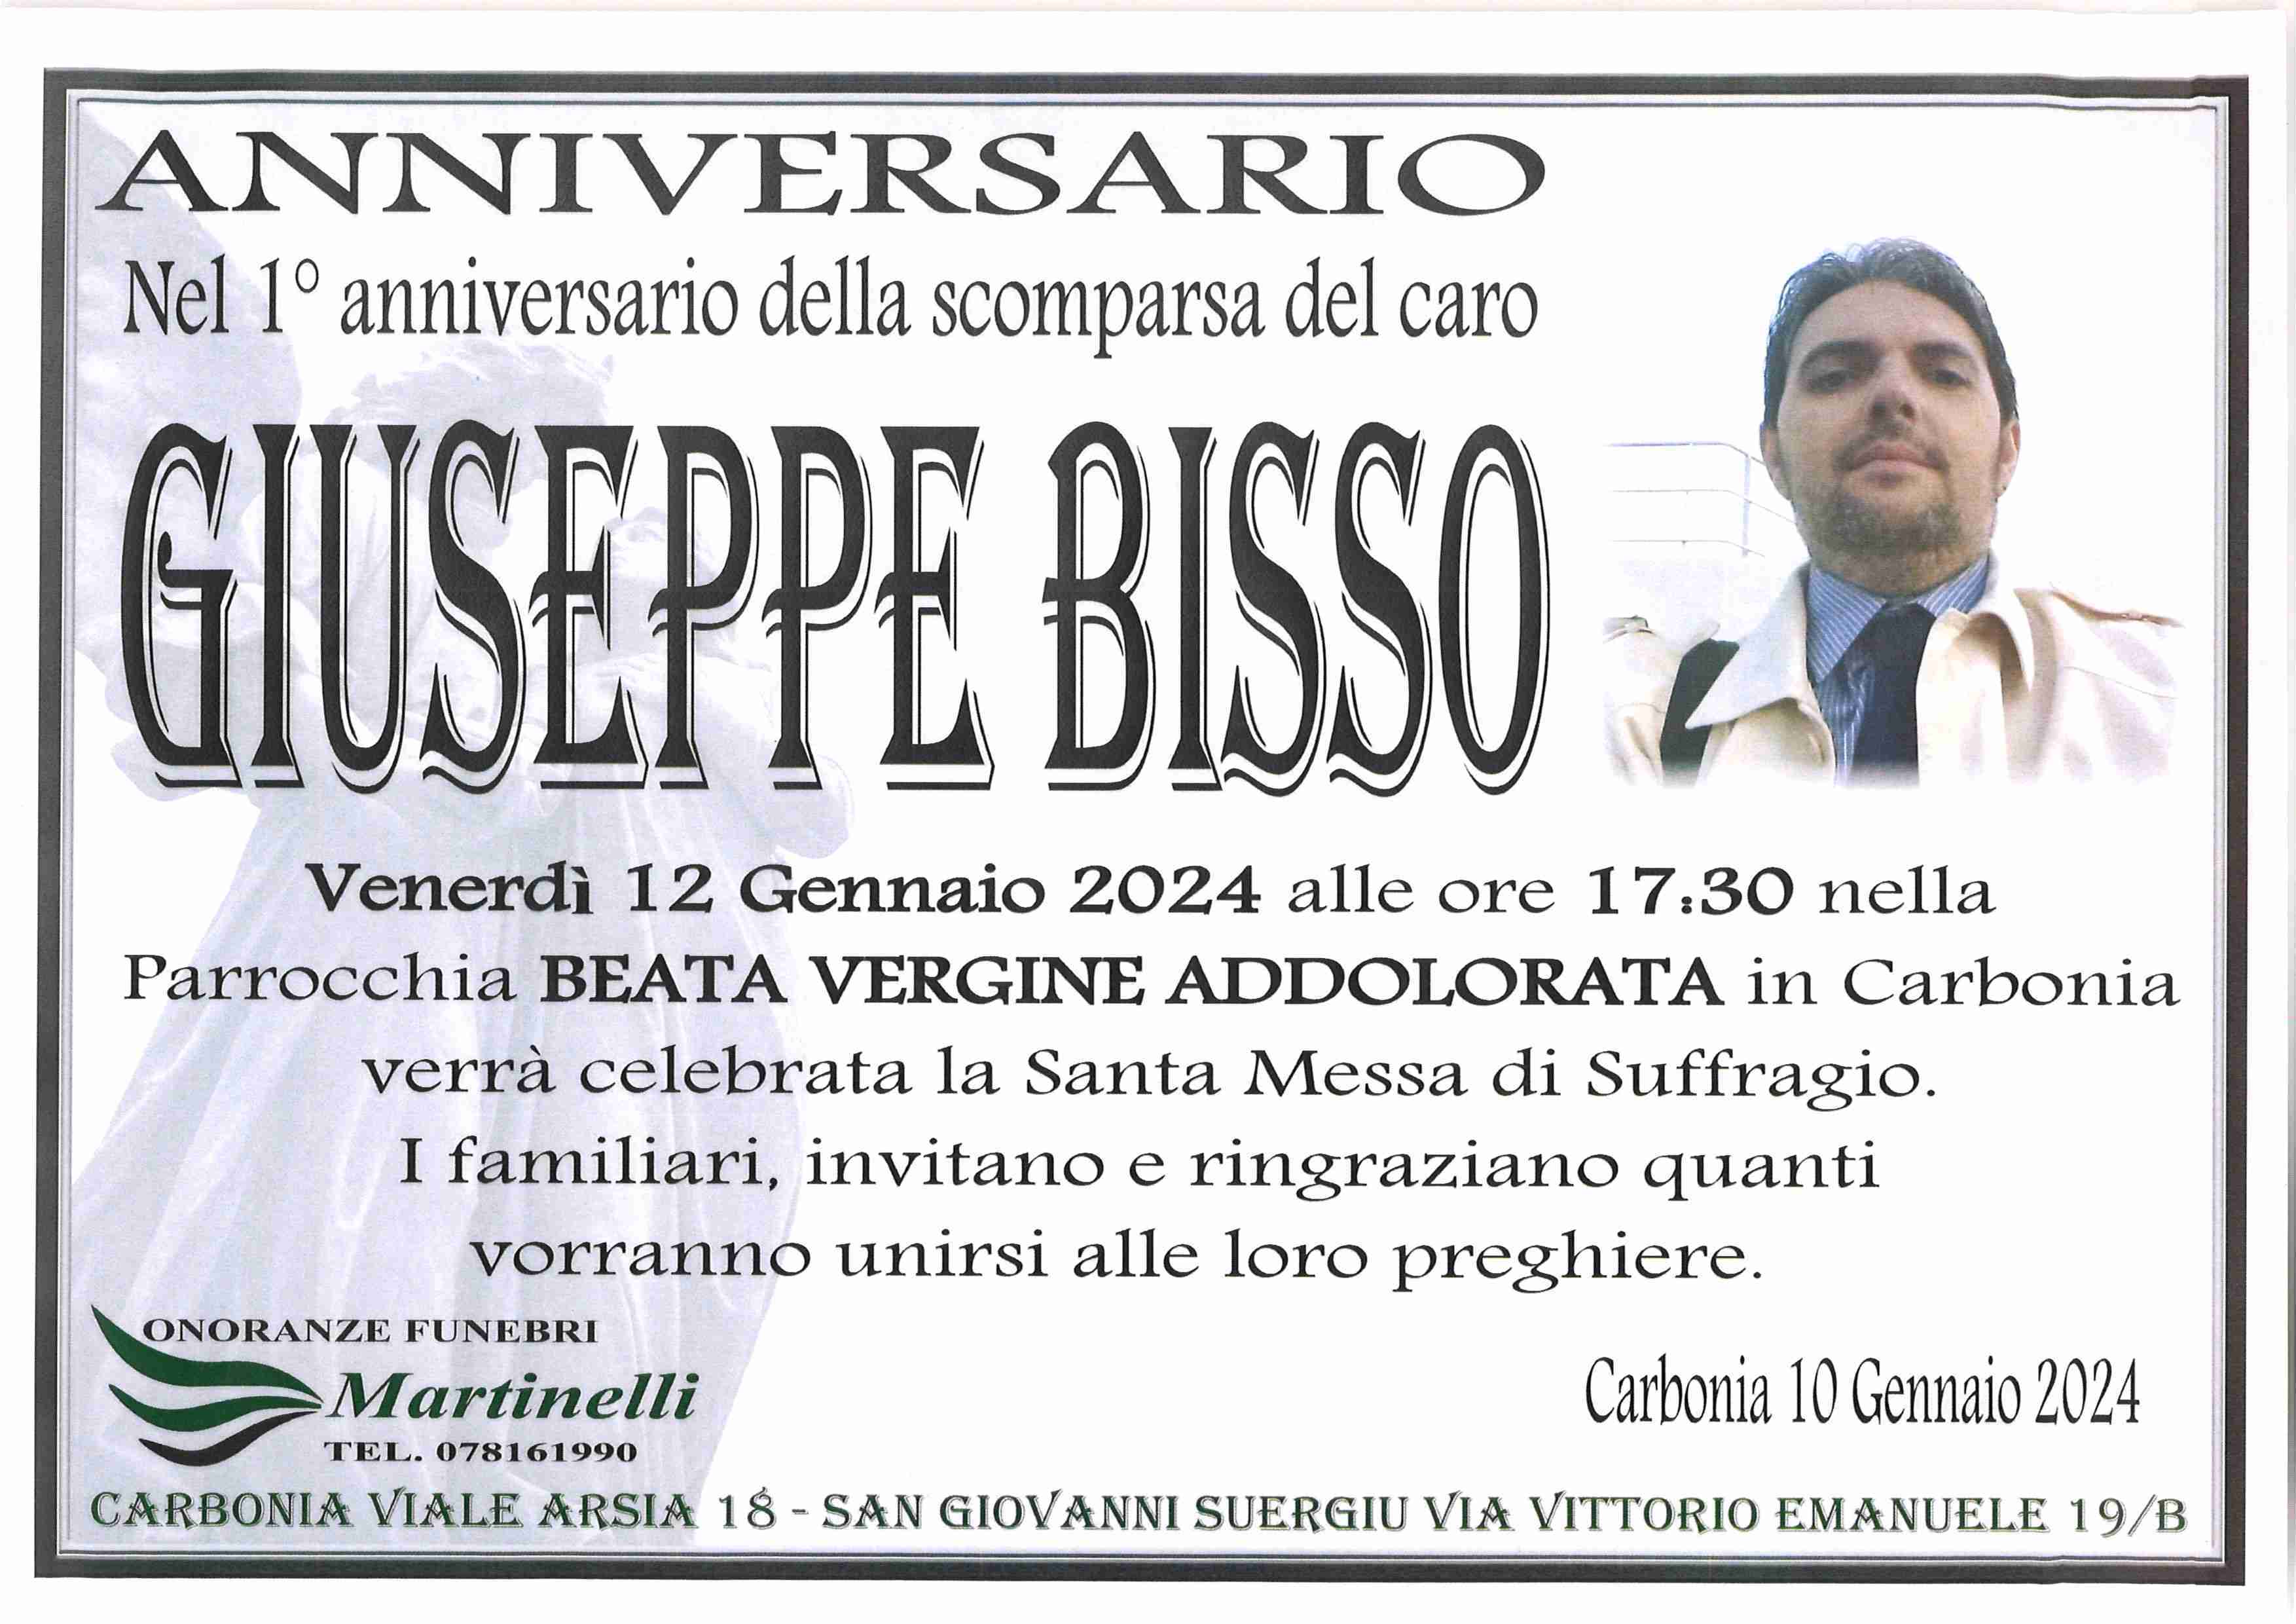 Giuseppe Bisso